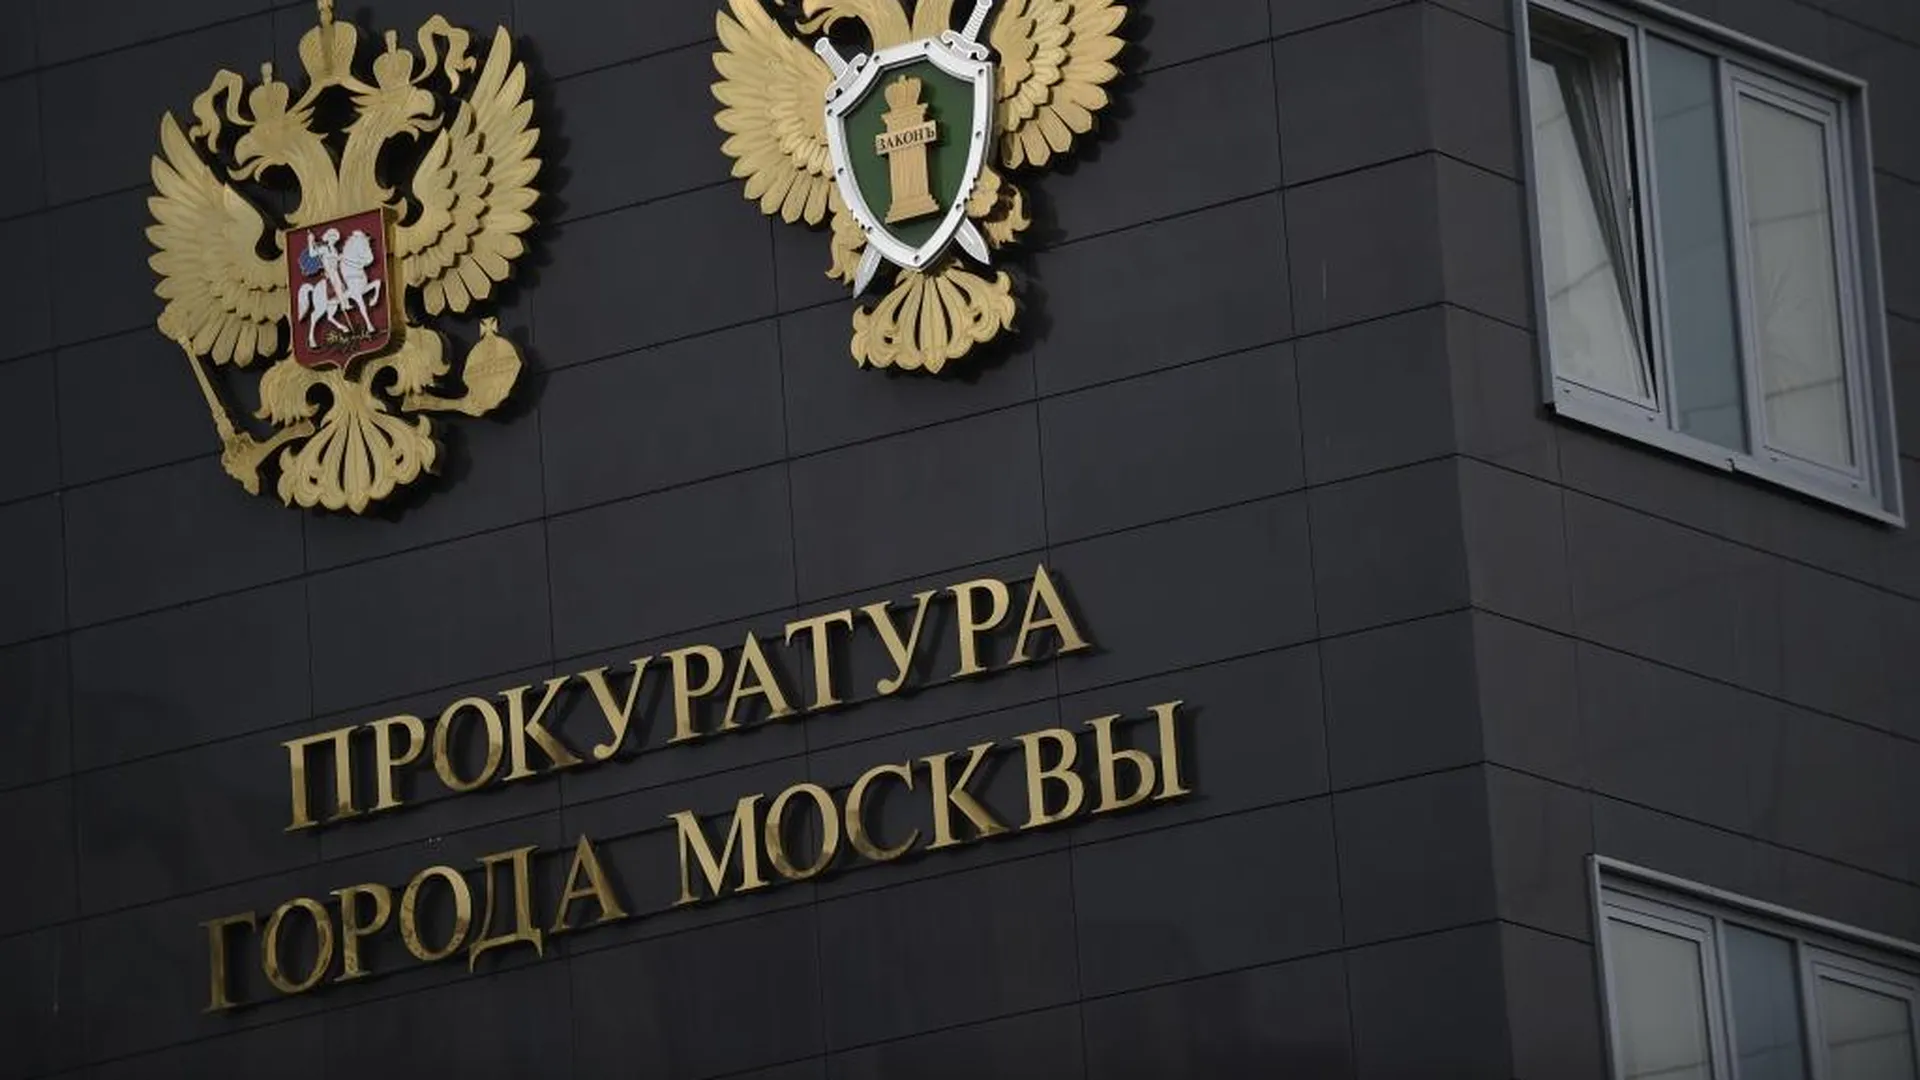 Прокуратура Москвы провела проверку типографии после пожара, в котором погибли 17 человек